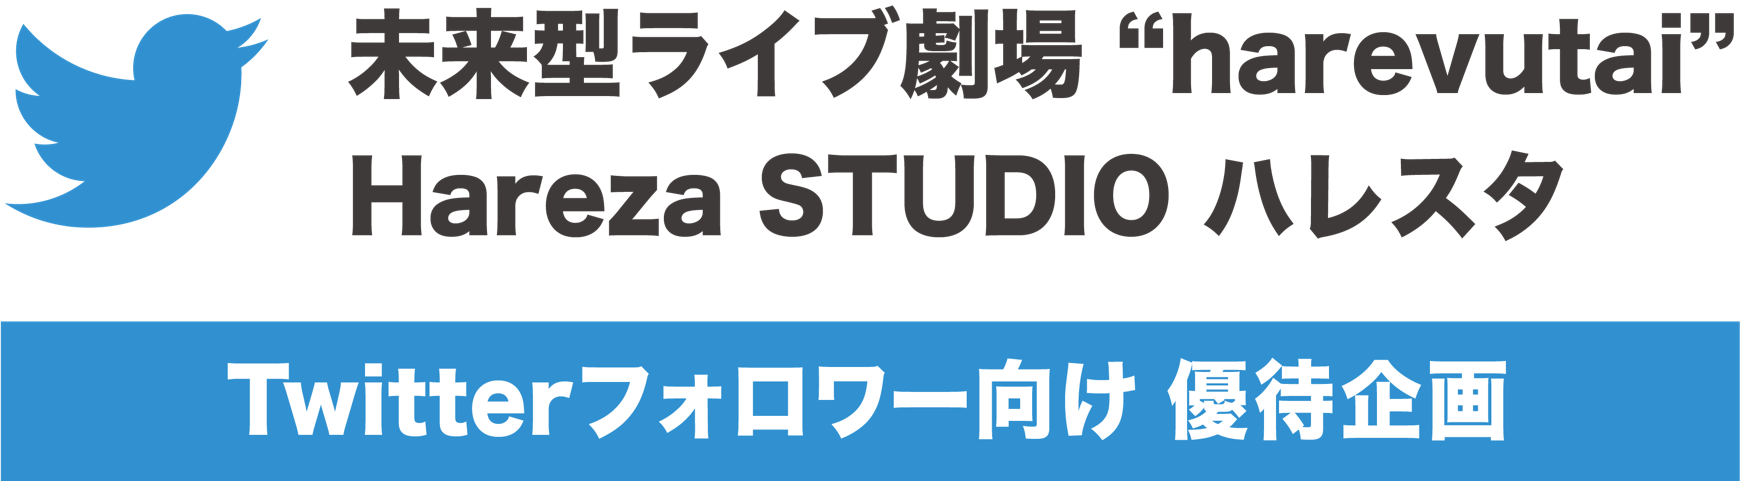 未来型ライブ劇場“harevutai”、Hareza STUDIO ハレスタ Twitterフォロワー向け優待企画